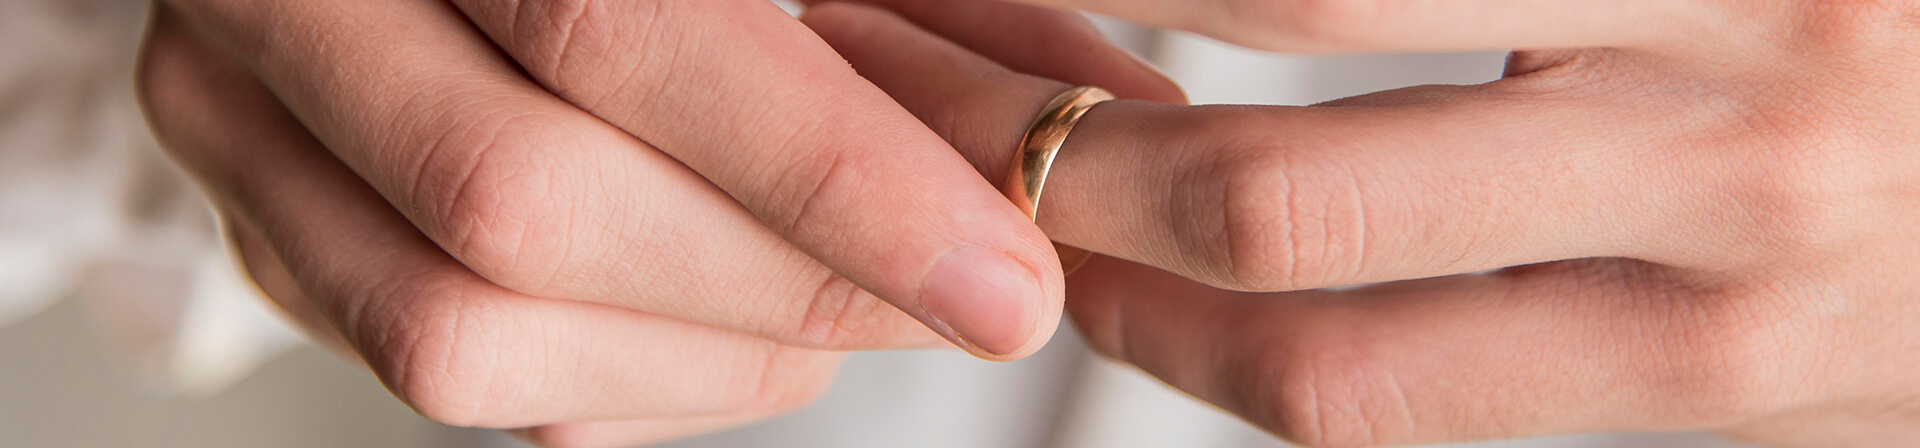 руки с брачным кольцом